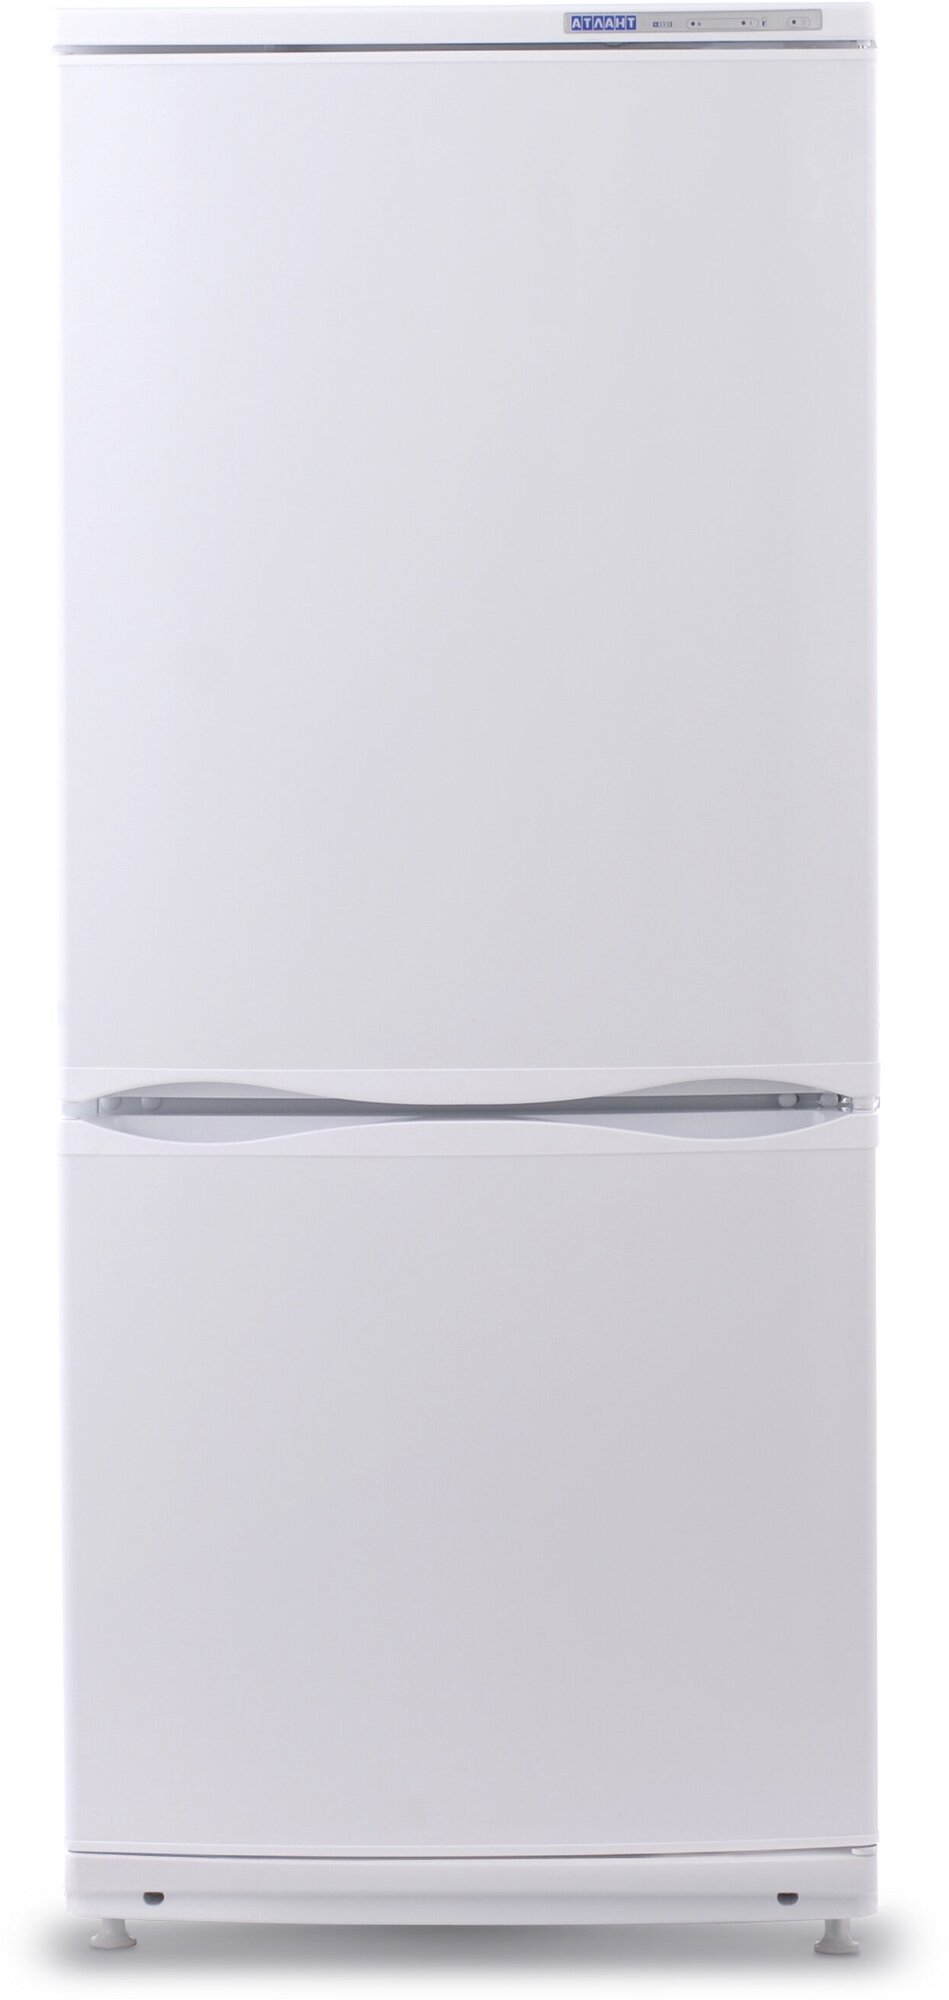 Холодильник Атлант 4008-022